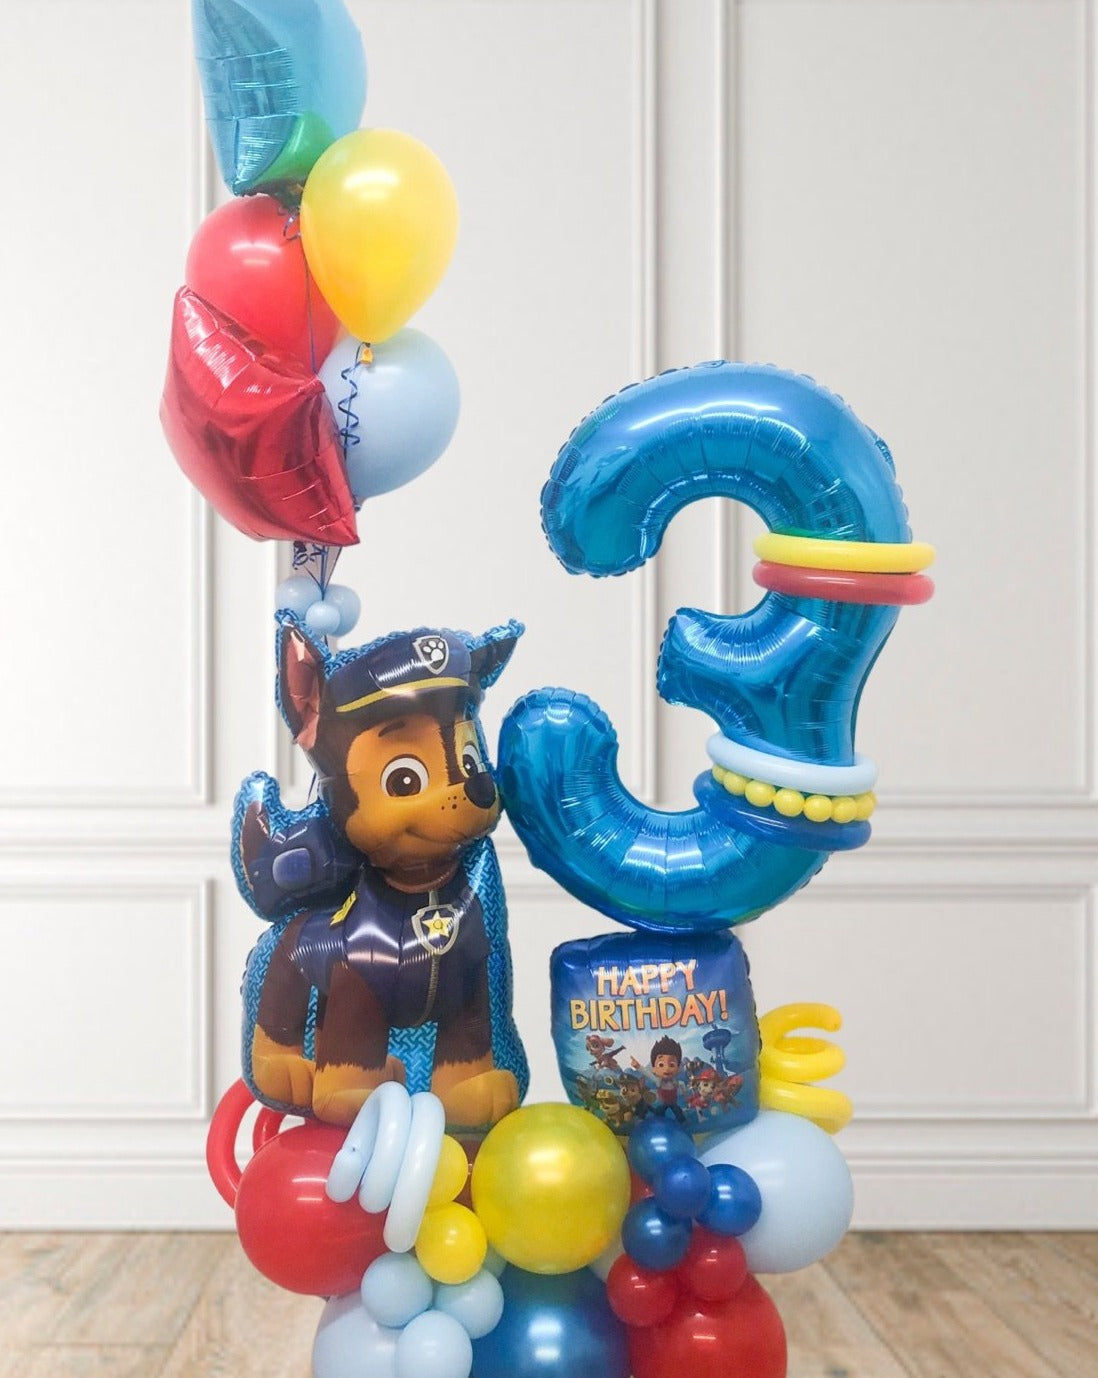 Happy Box - Decoración de paw patrol 🐶 para festejar los 4 años de Maxi # globo #balloon #globos #balloons #maxibouquet #bouquetdeglobos #hbd  #arreglodeglobos #cumpleaños #hbday #felizcumpleaños #decoracionconglobos  #decoraconglobos #happyboxqro